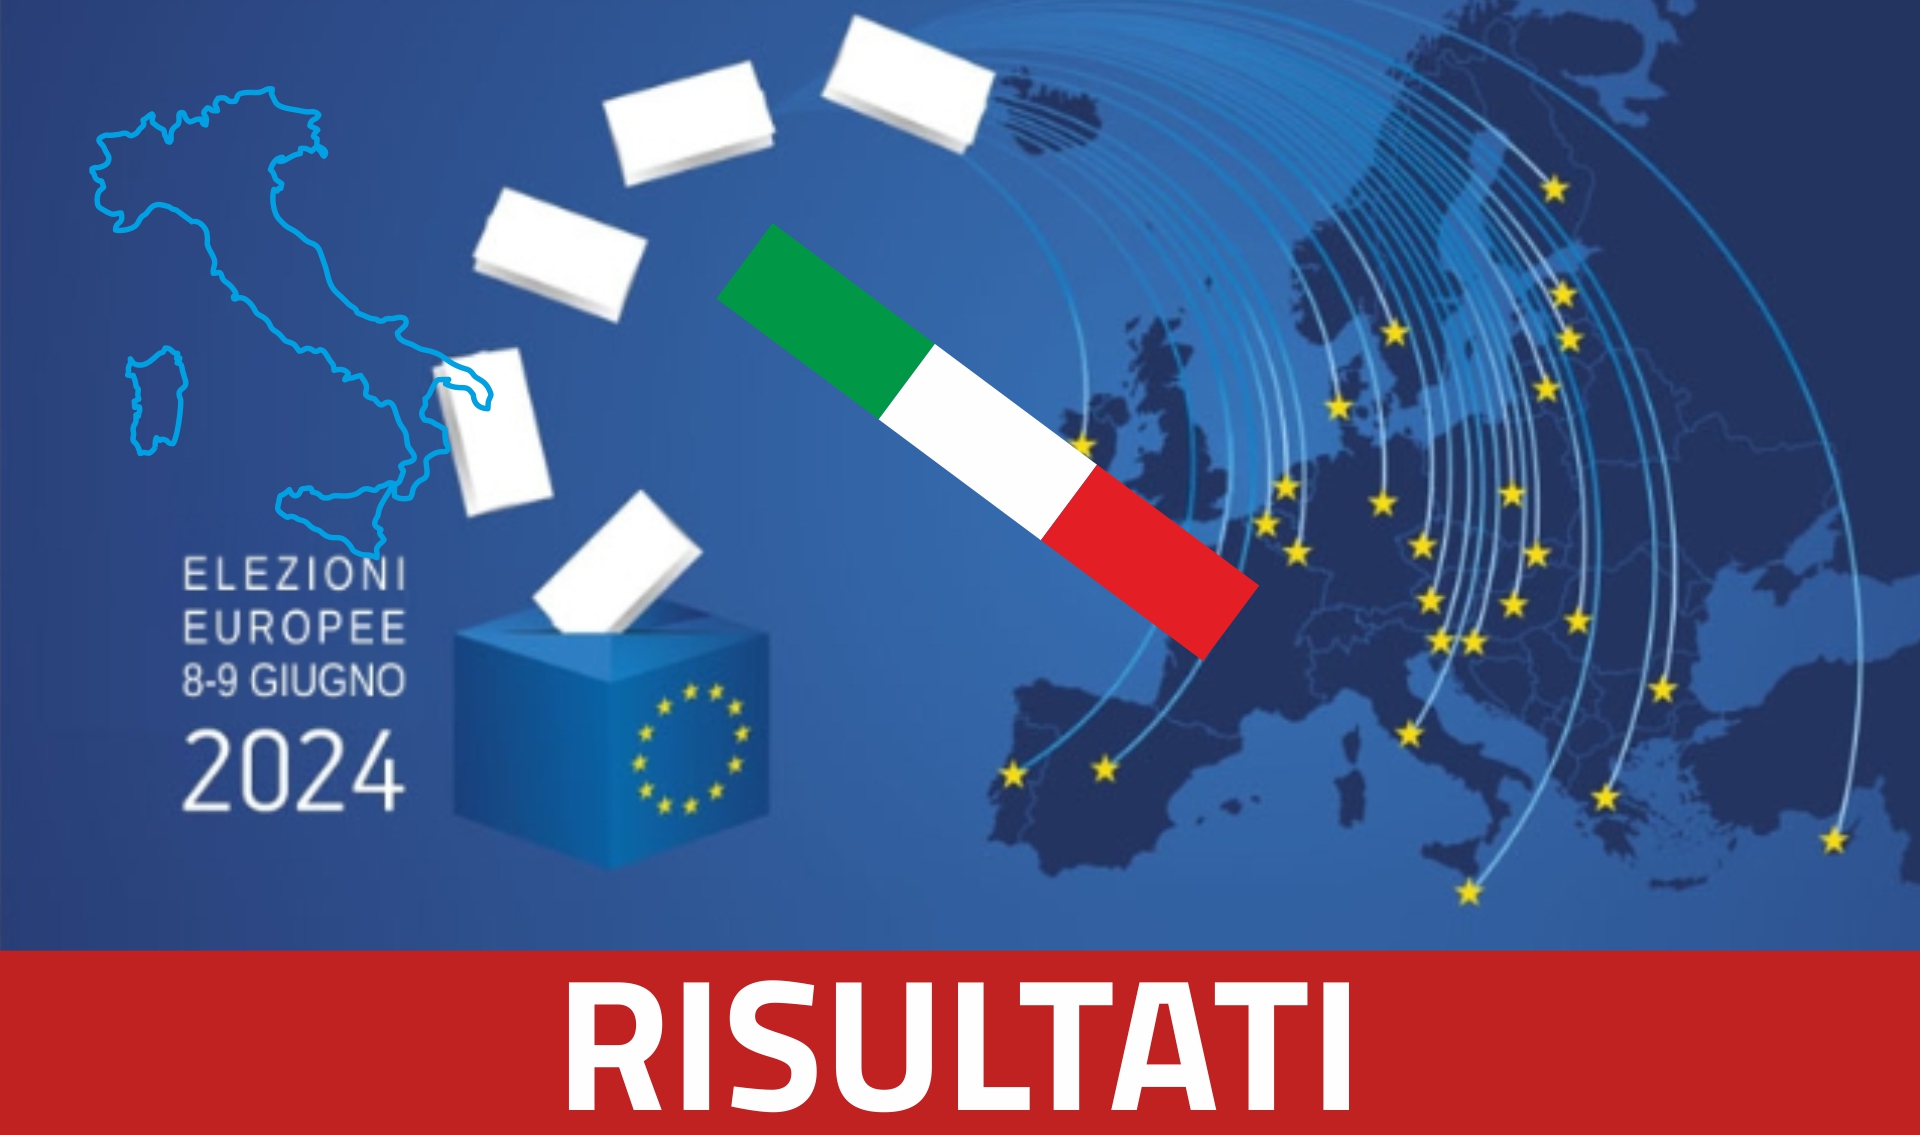 Elezioni Europee del 8-9 giugno 2024: Risultati Guspini